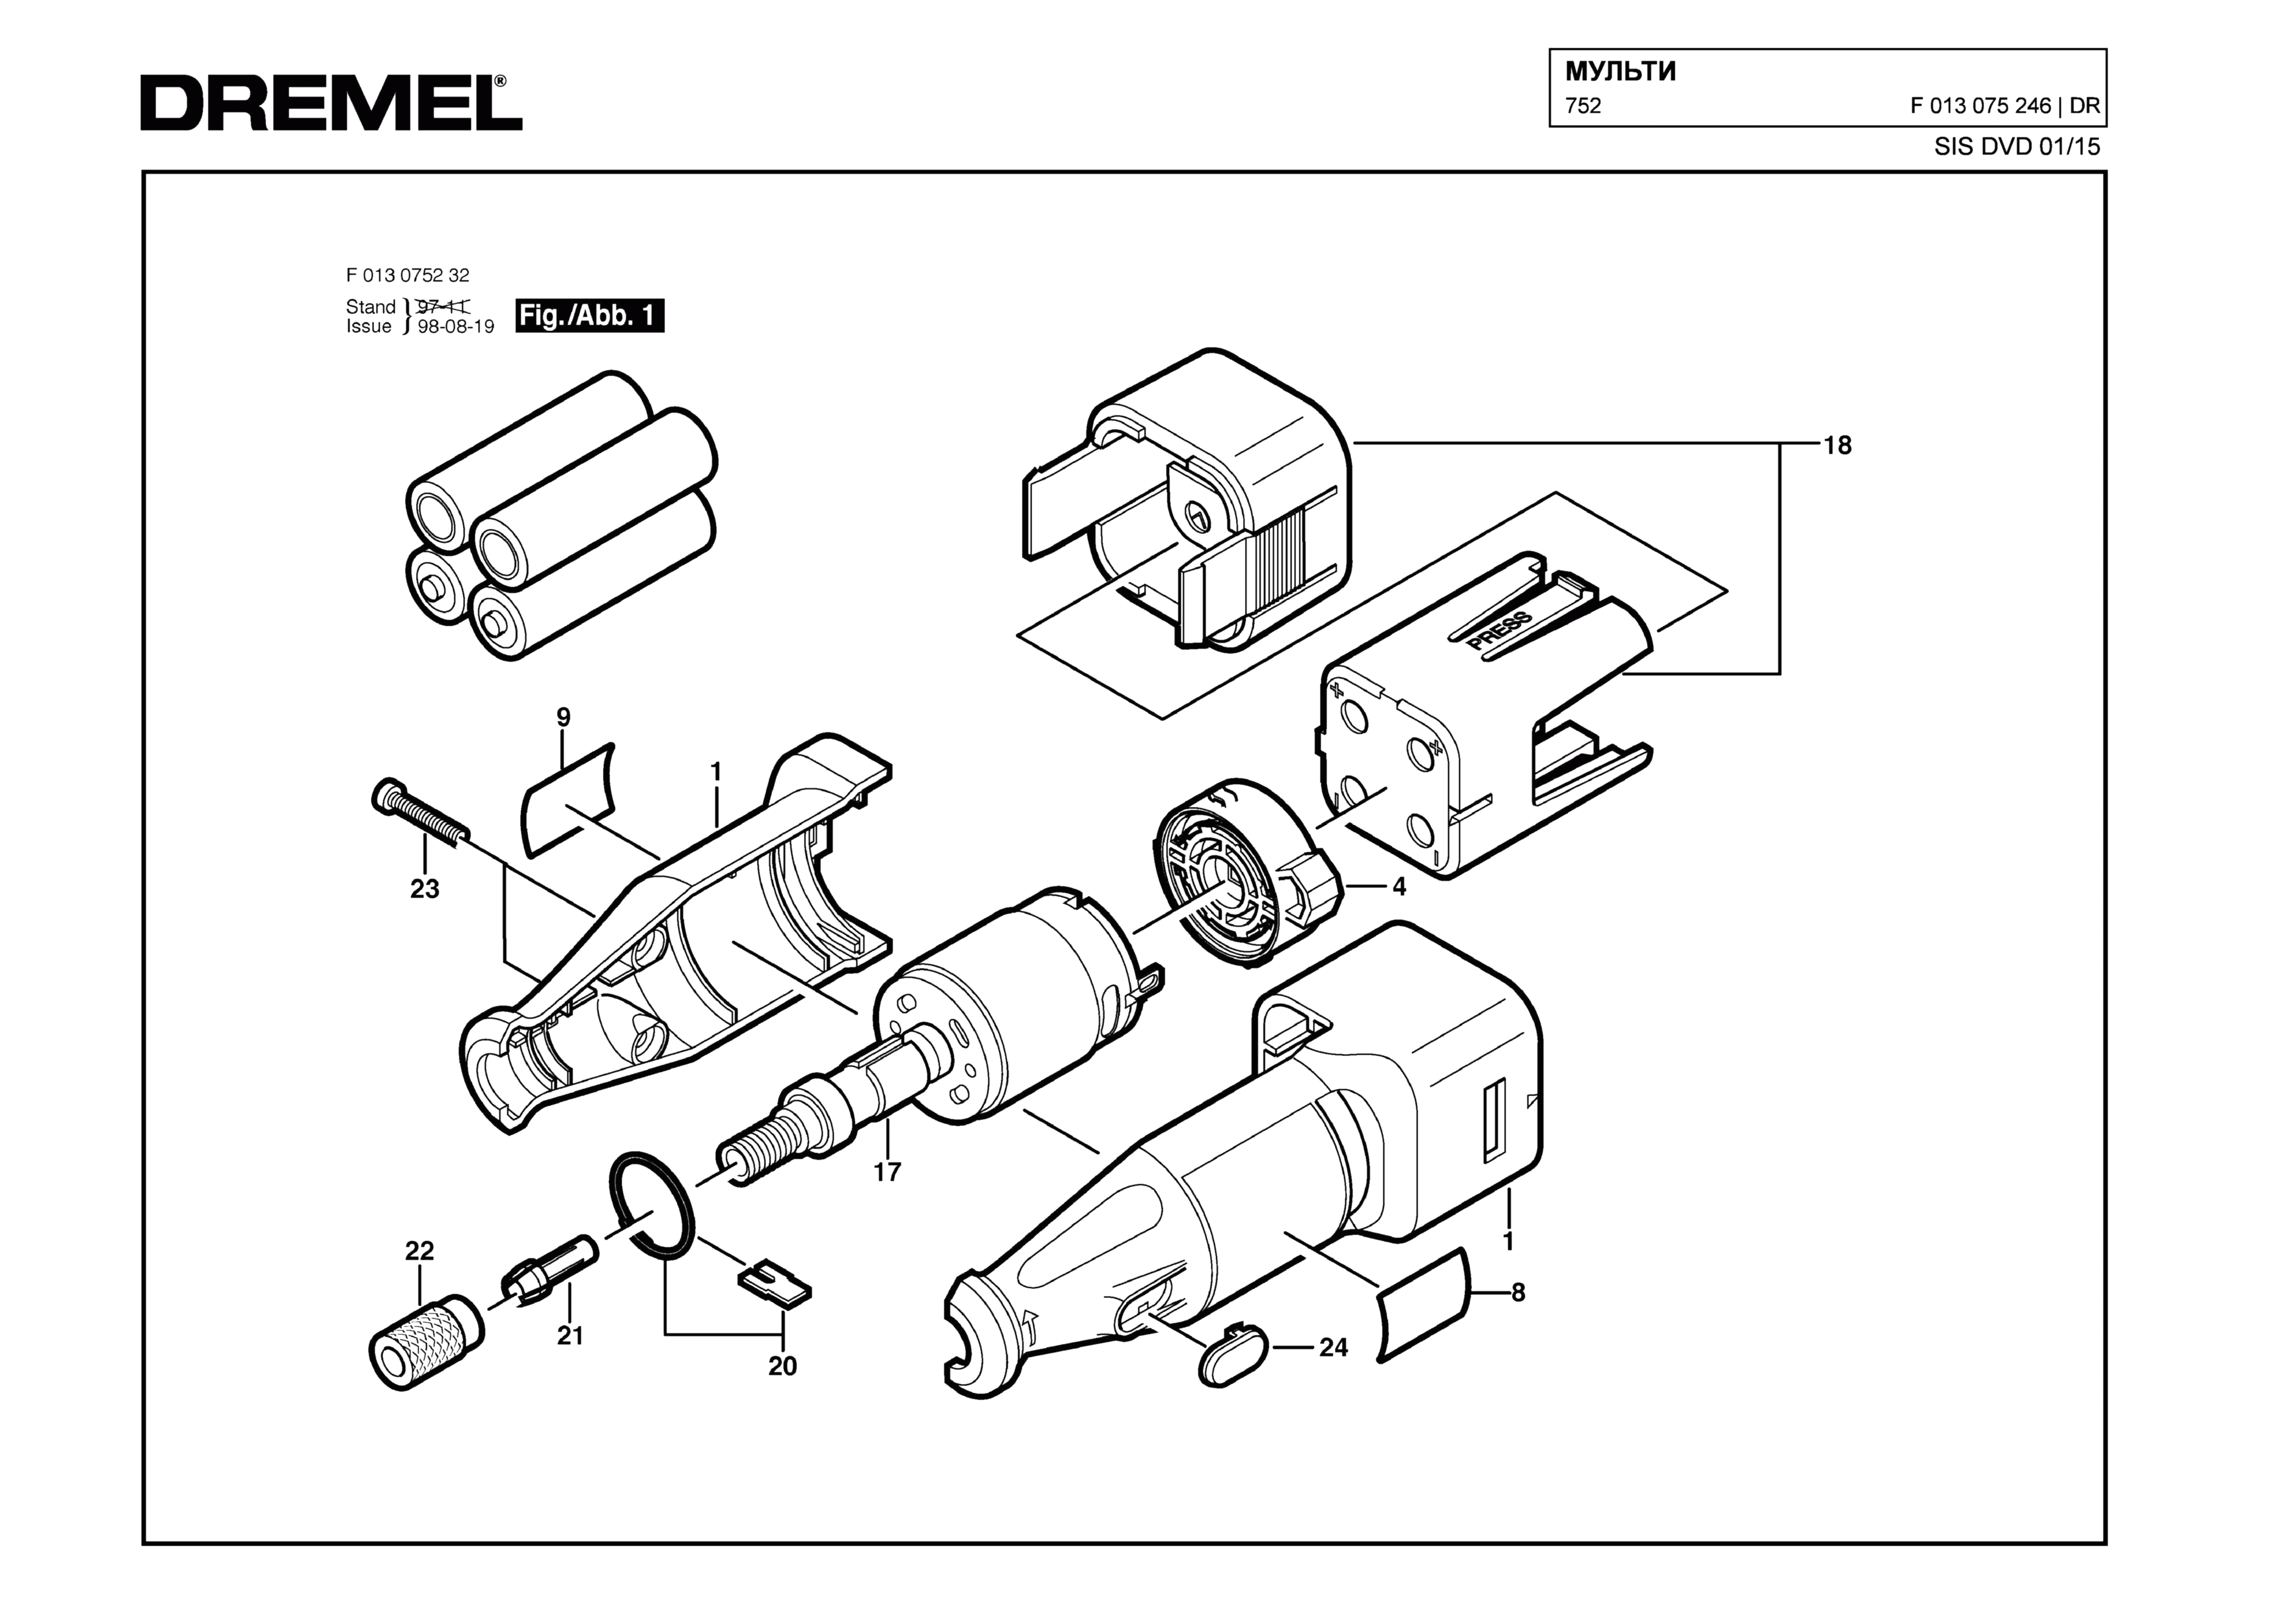 Шлифовальная машина Dremel 752 (ТИП F013075246)